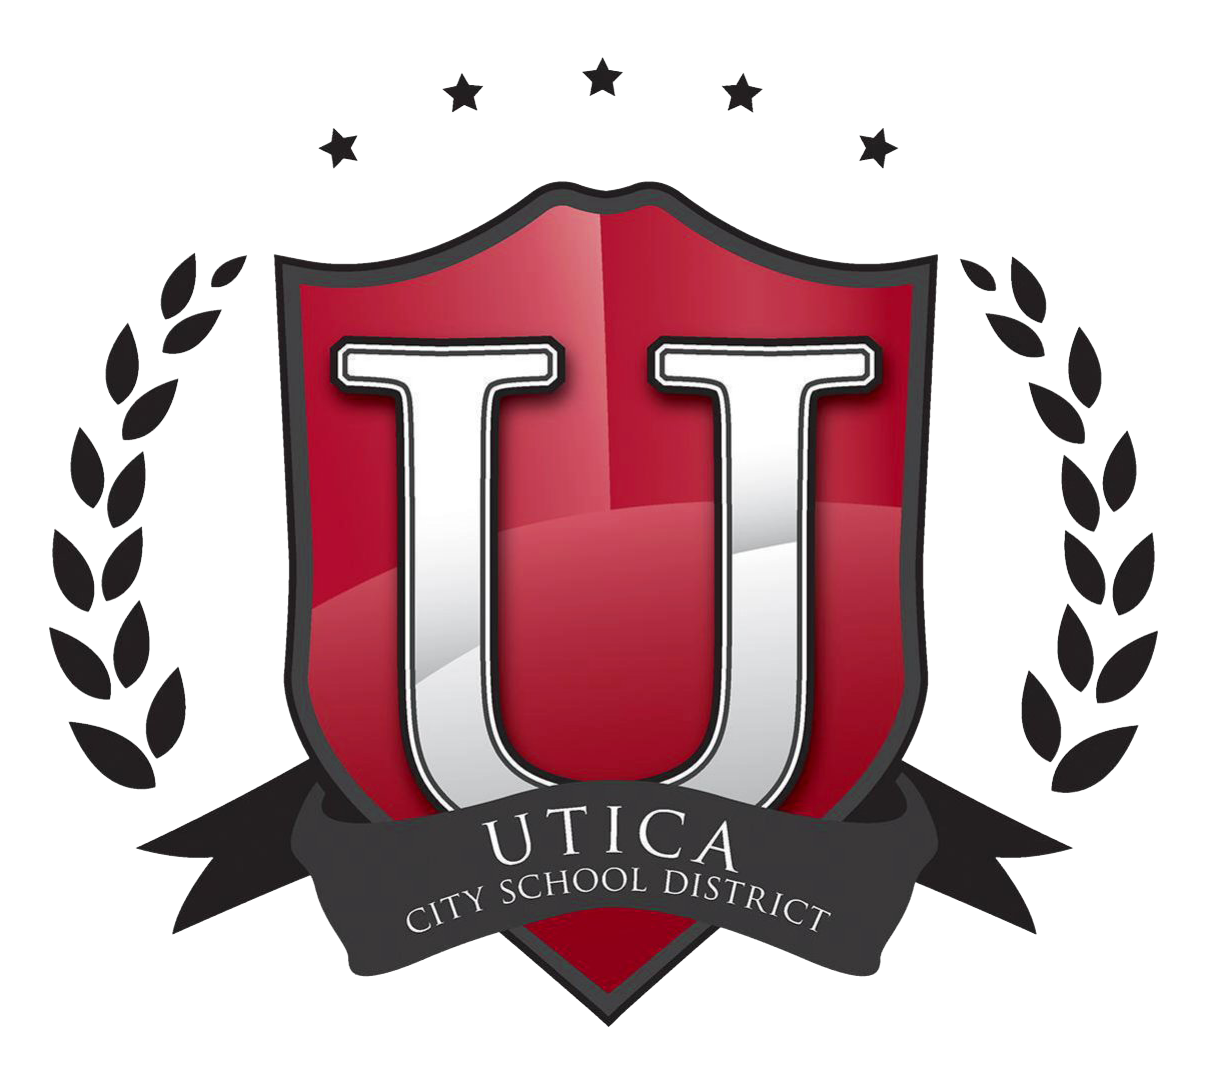 Escuelas de la ciudad de Utica